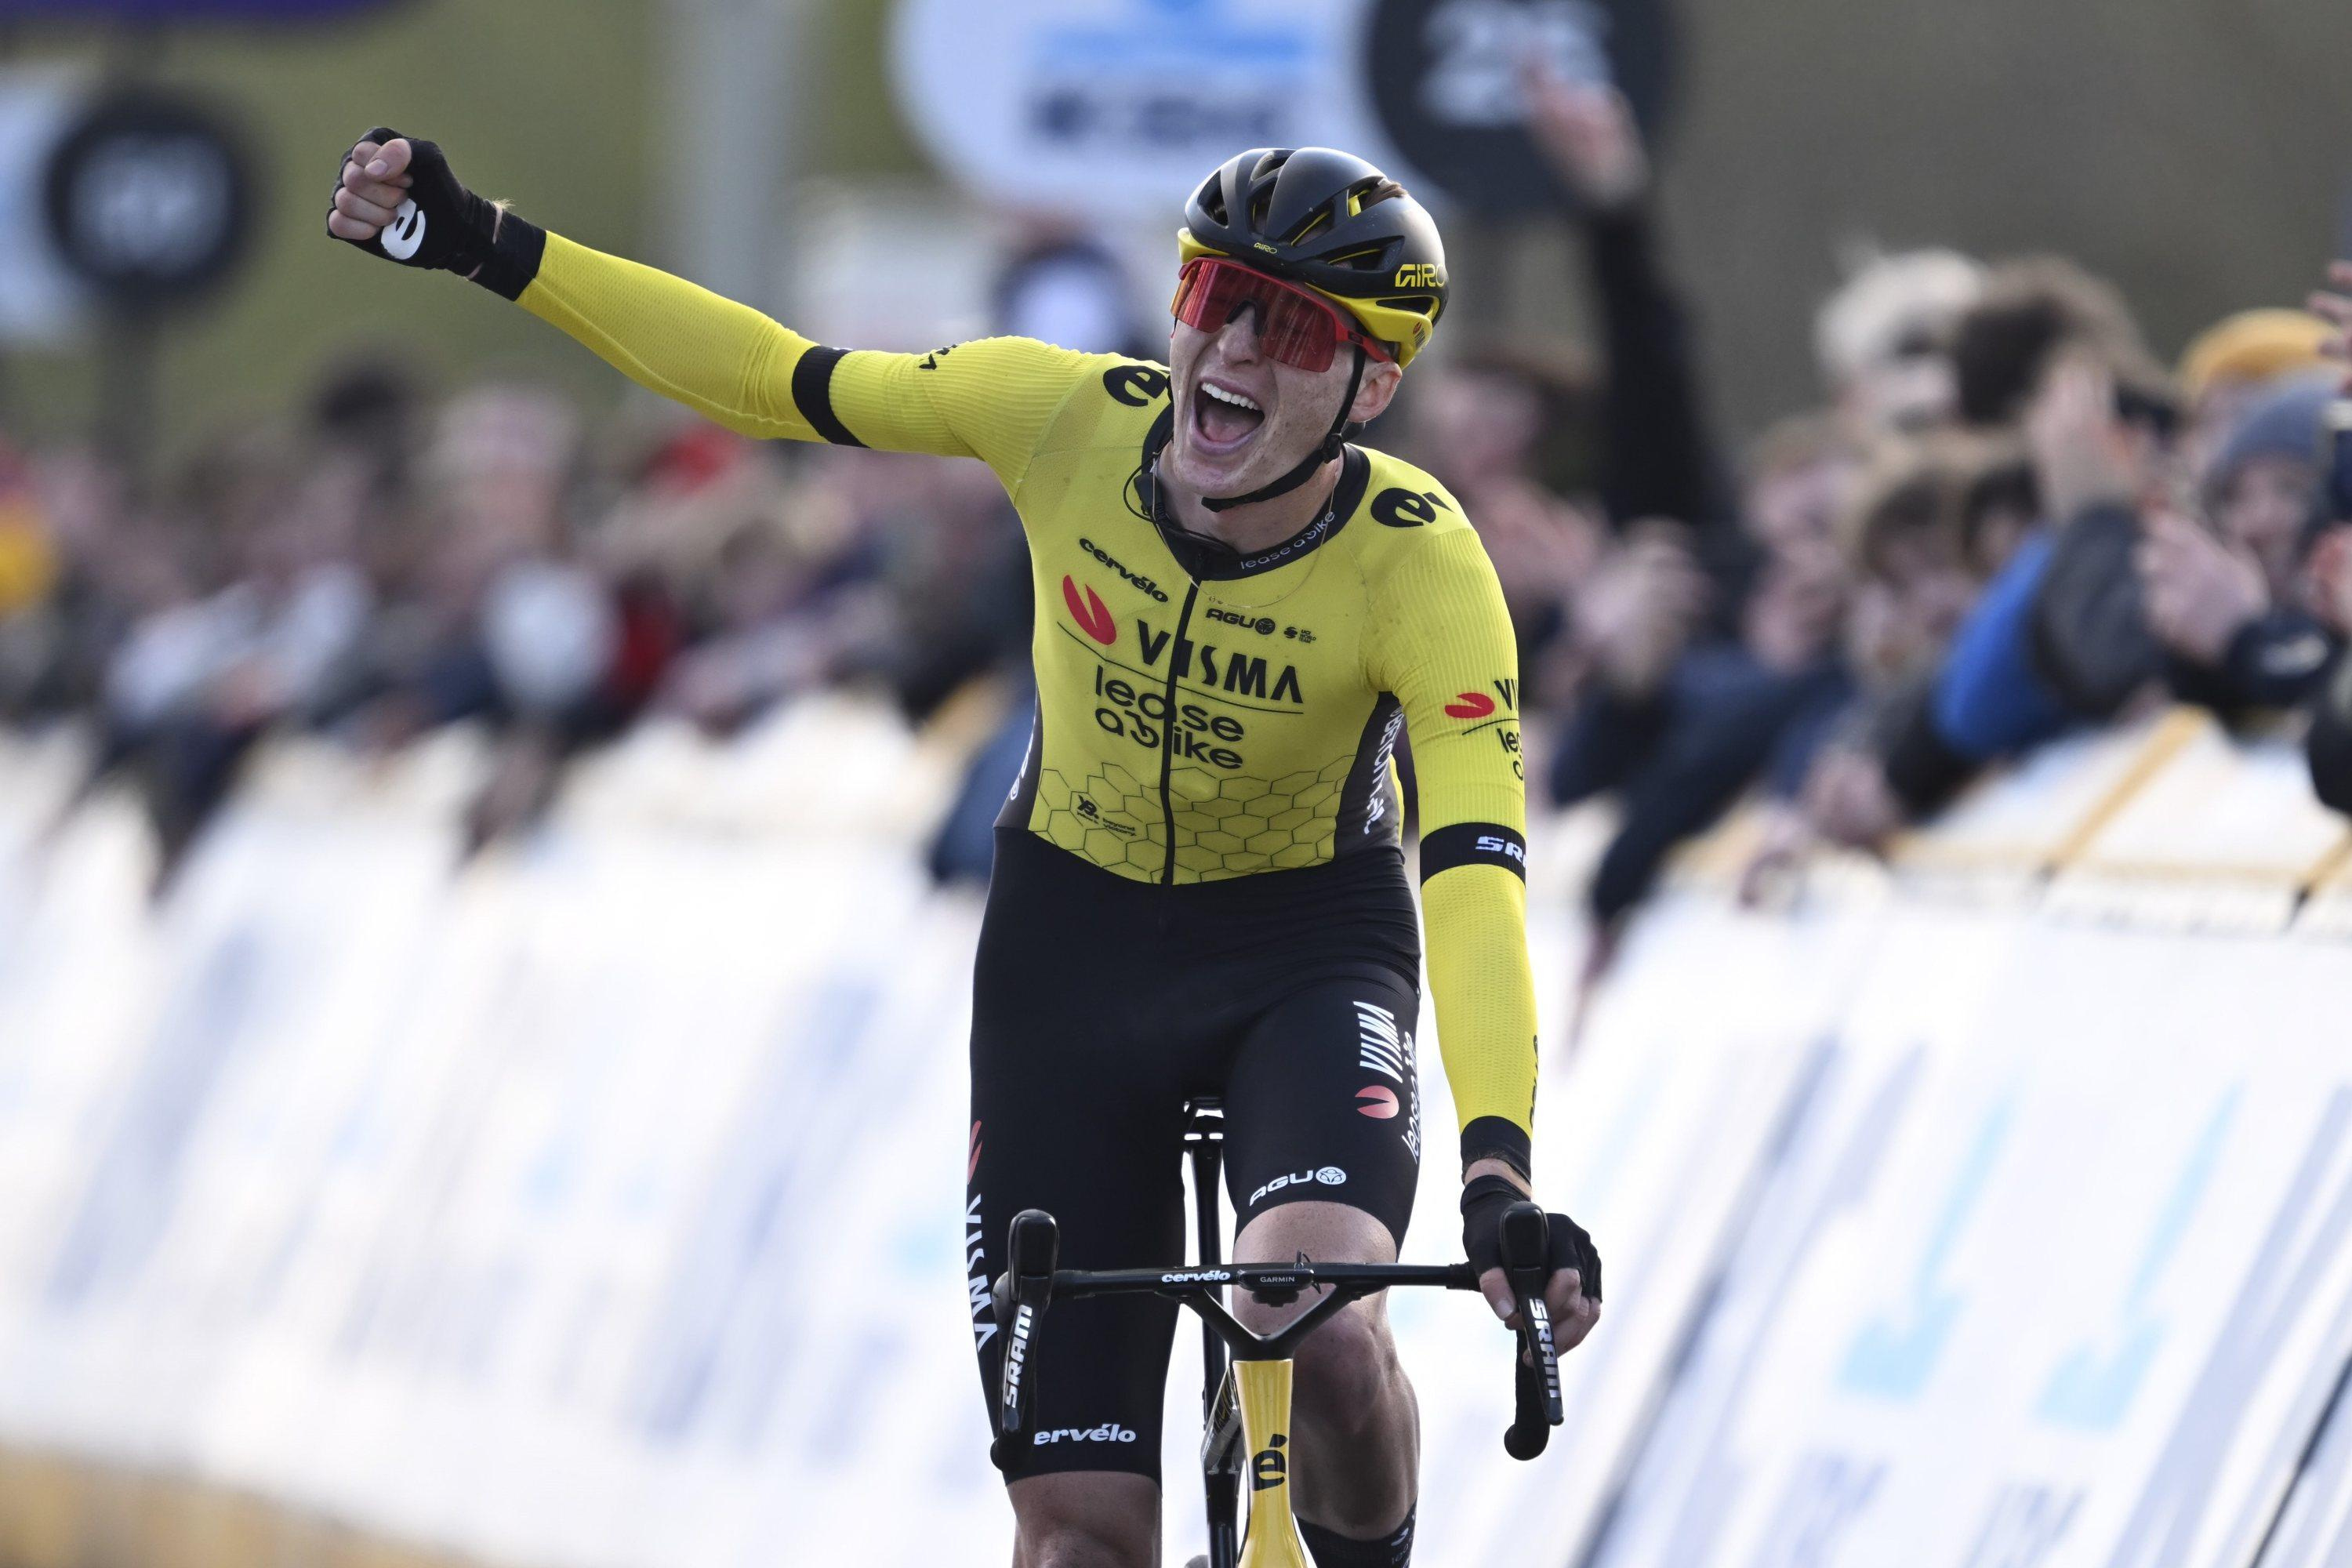 Cyclisme : Jorgenson vainqueur d’À Travers la Flandre après la chute de Van Aert